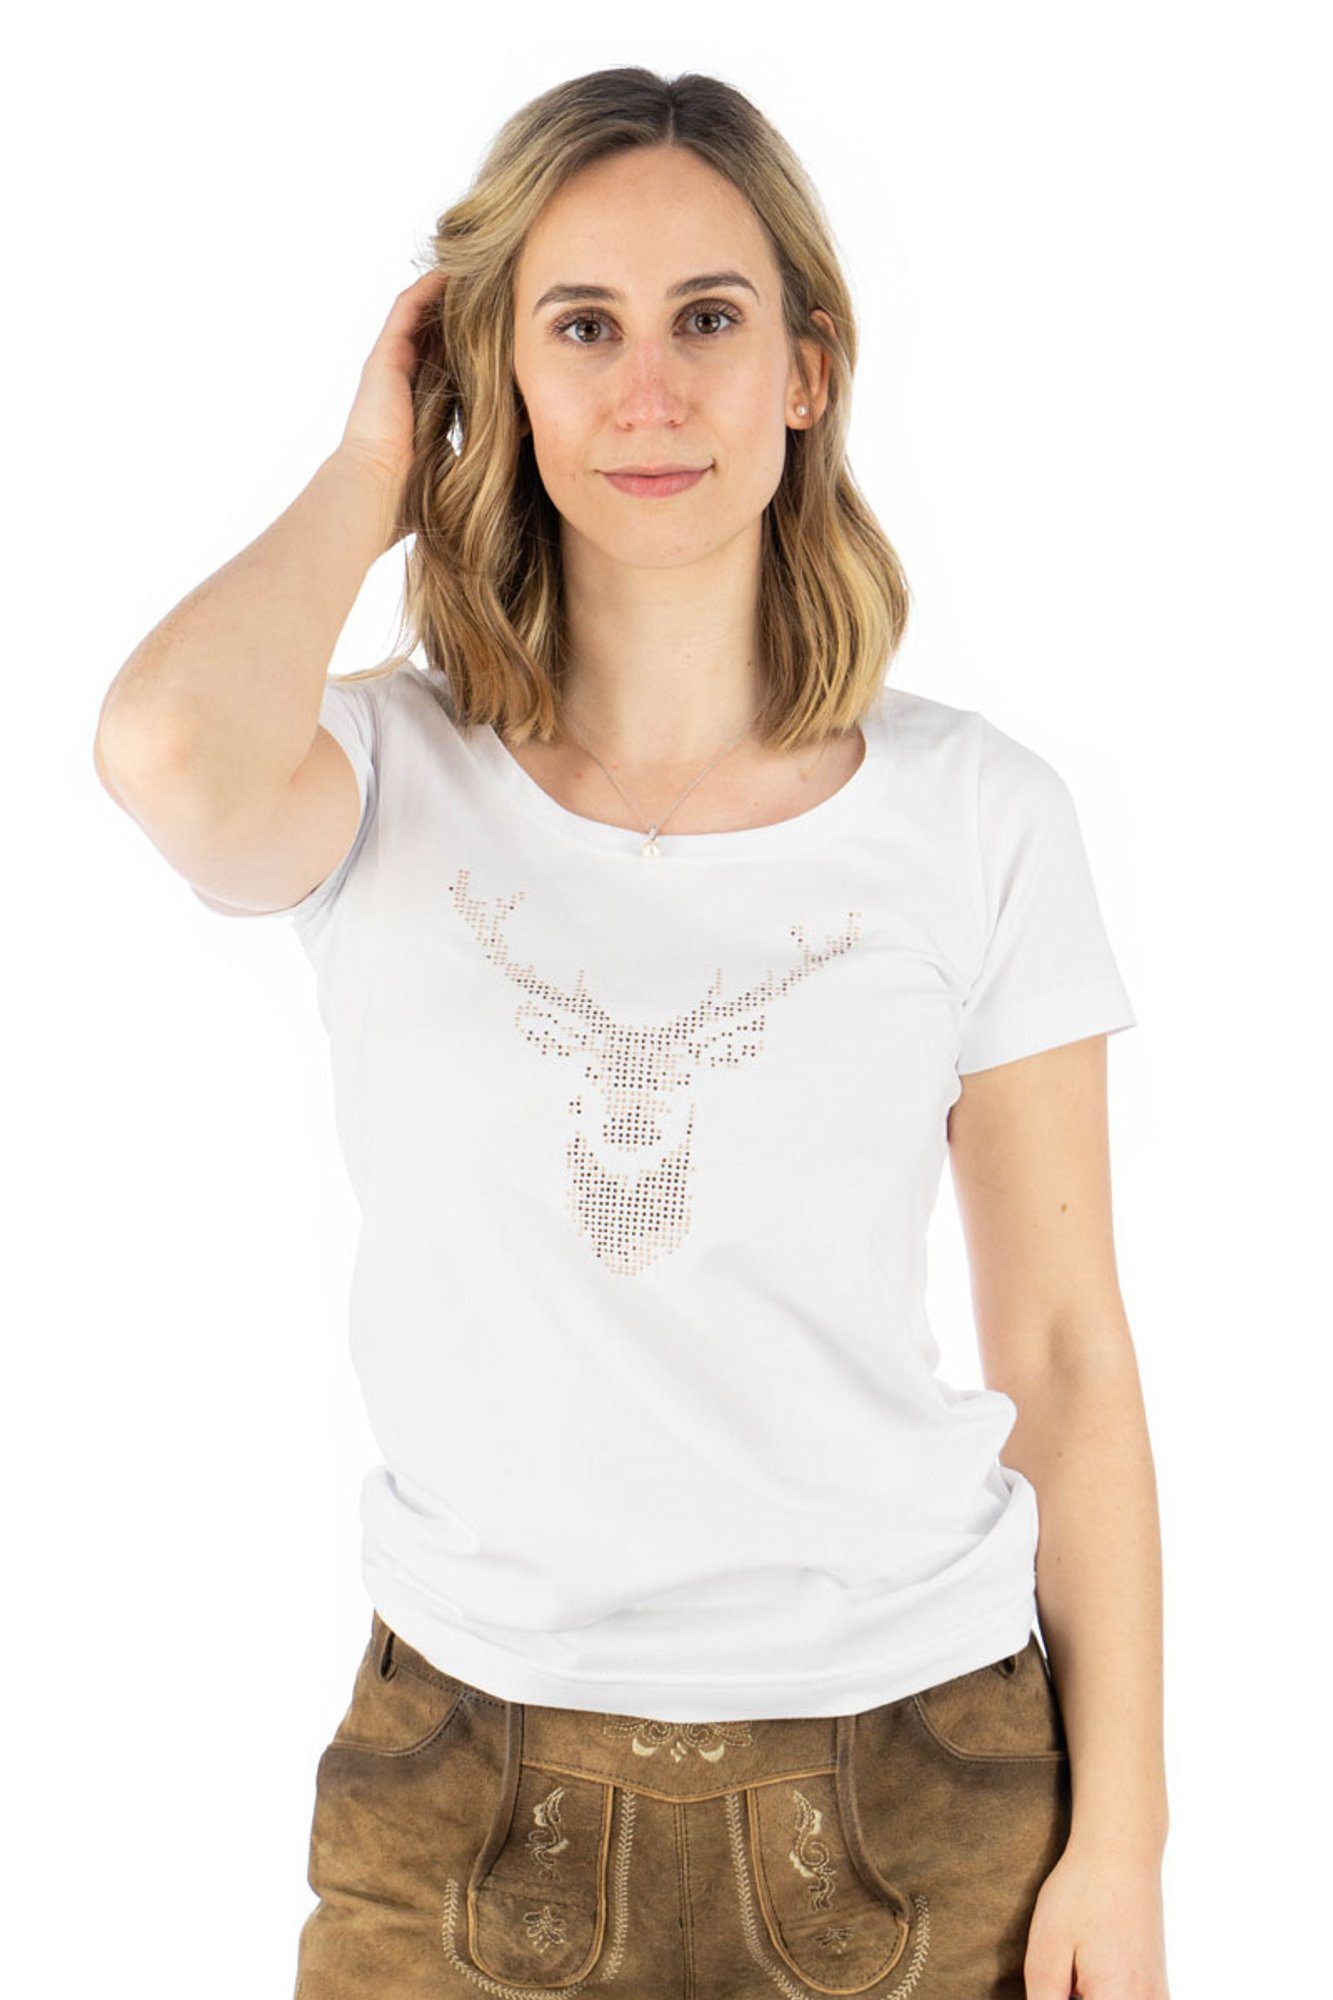 OS-Trachten Trachtenshirt Uginoy Kurzarm T-Shirt mit Strass-Hirsch auf der Brust weiß